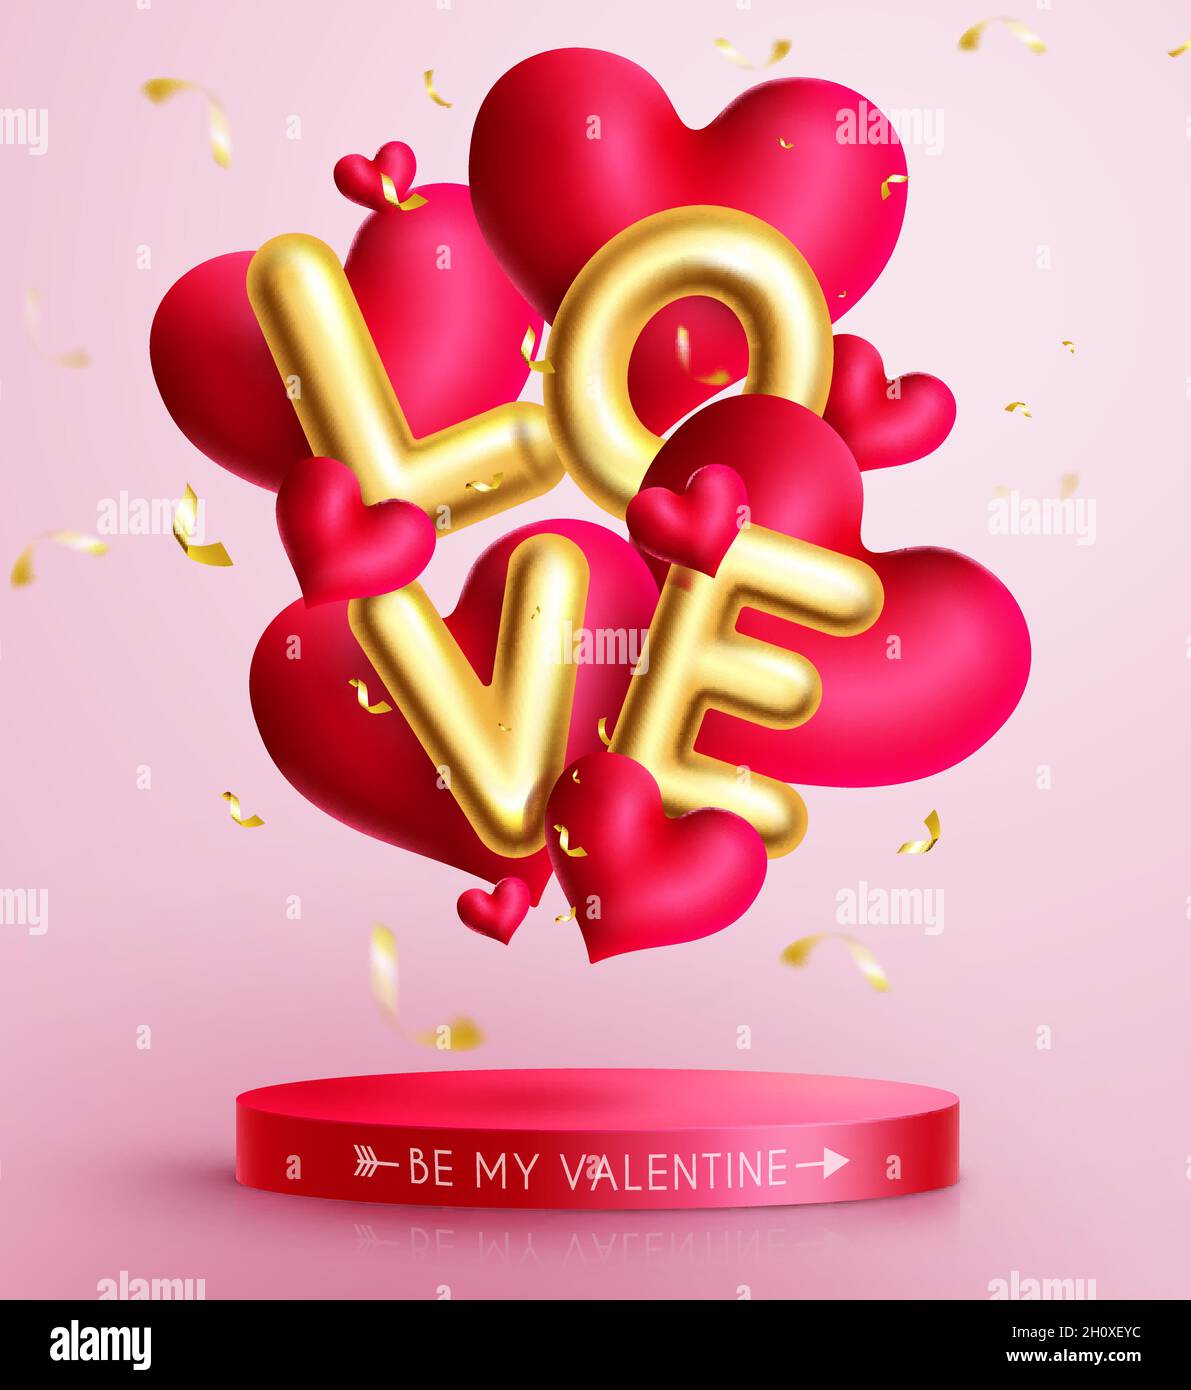 Valentines ama il disegno vettoriale del balloon. Testo d'amore in palloncino dorato con cuori galleggianti ed elementi a confetti per regalo di San Valentino. Illustrazione Vettoriale